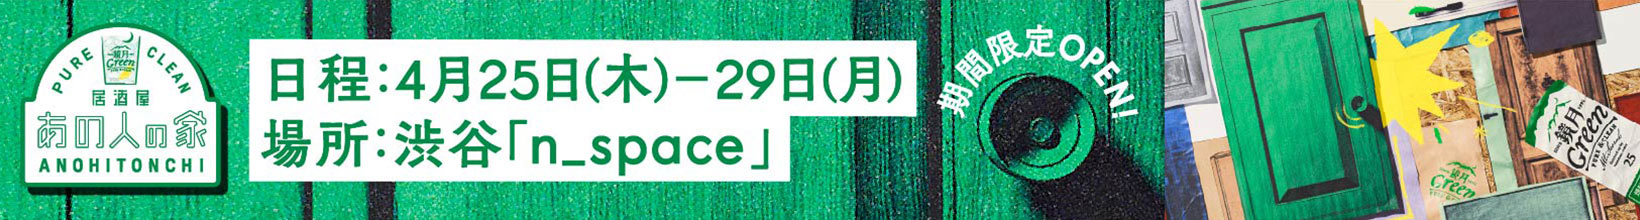 居酒屋あの人の家 日程:4月25日(木)〜29日(月) 場所:渋谷「n_space」